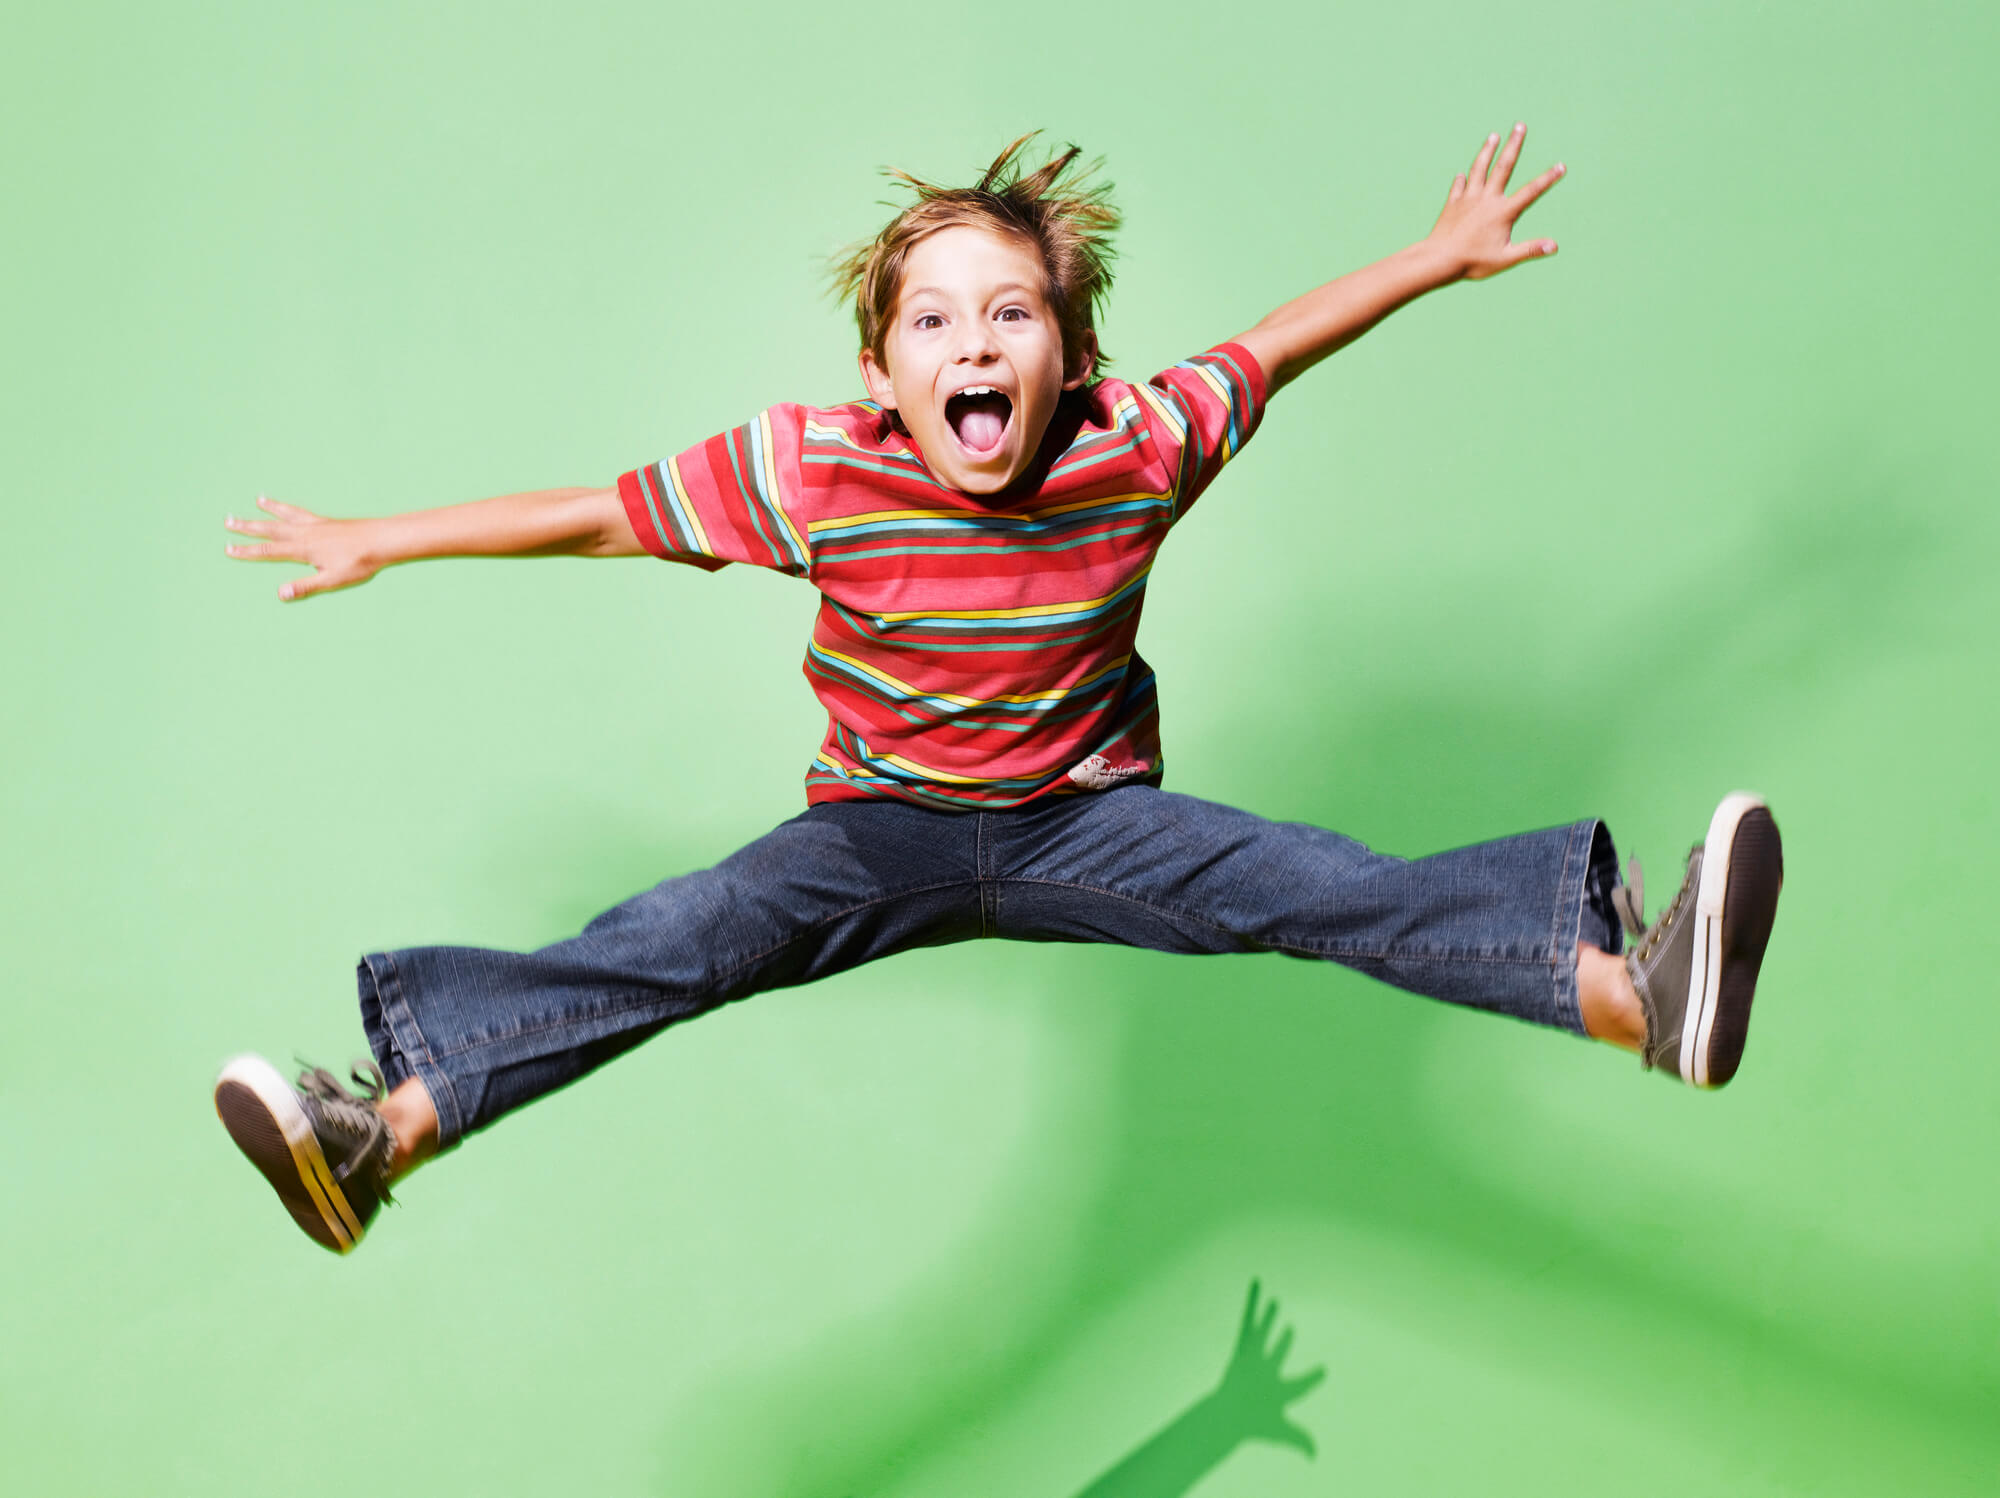 Enfant hyperactif : comment qualifier le comportement de son enfant ?